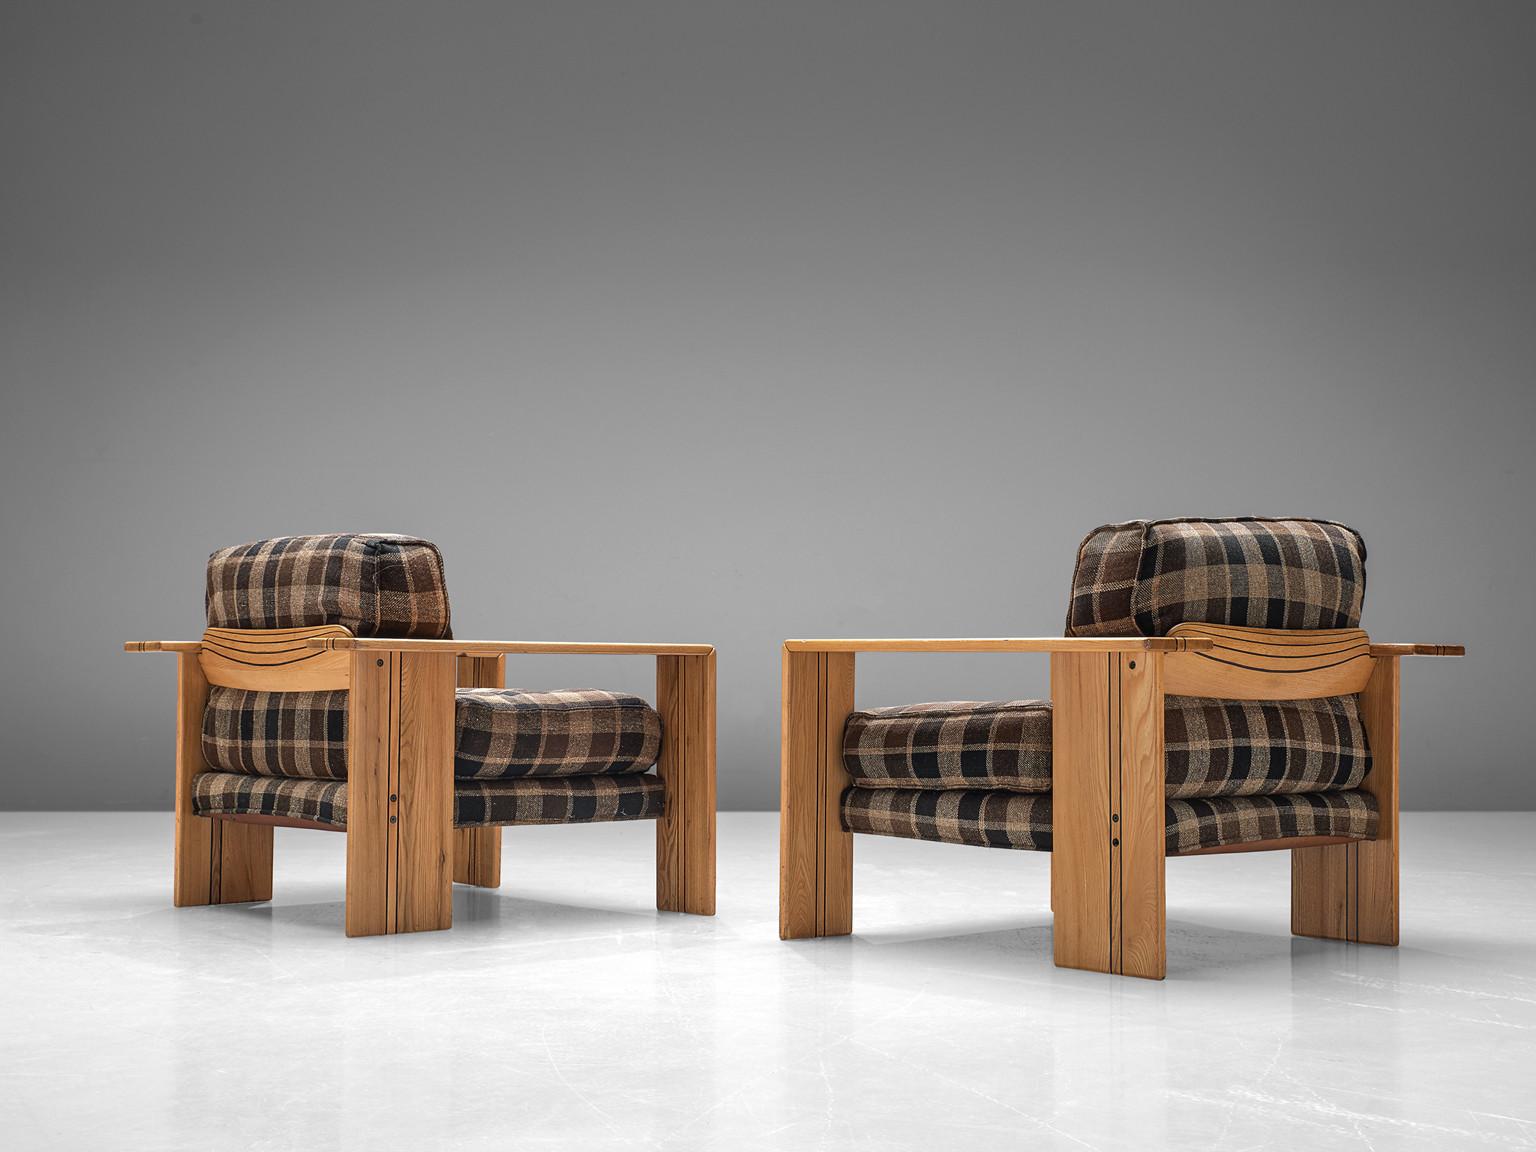 Afra & Tobia Scarpa pour Maxalto, paire de chaises longues 'Artona', frêne, tissu à carreaux, Italie, 1975/1979

Paire de chaises longues cubiques 'Artona' du couple de designers italiens Afra et Tobia Scarpa. Ces chaises témoignent d'un